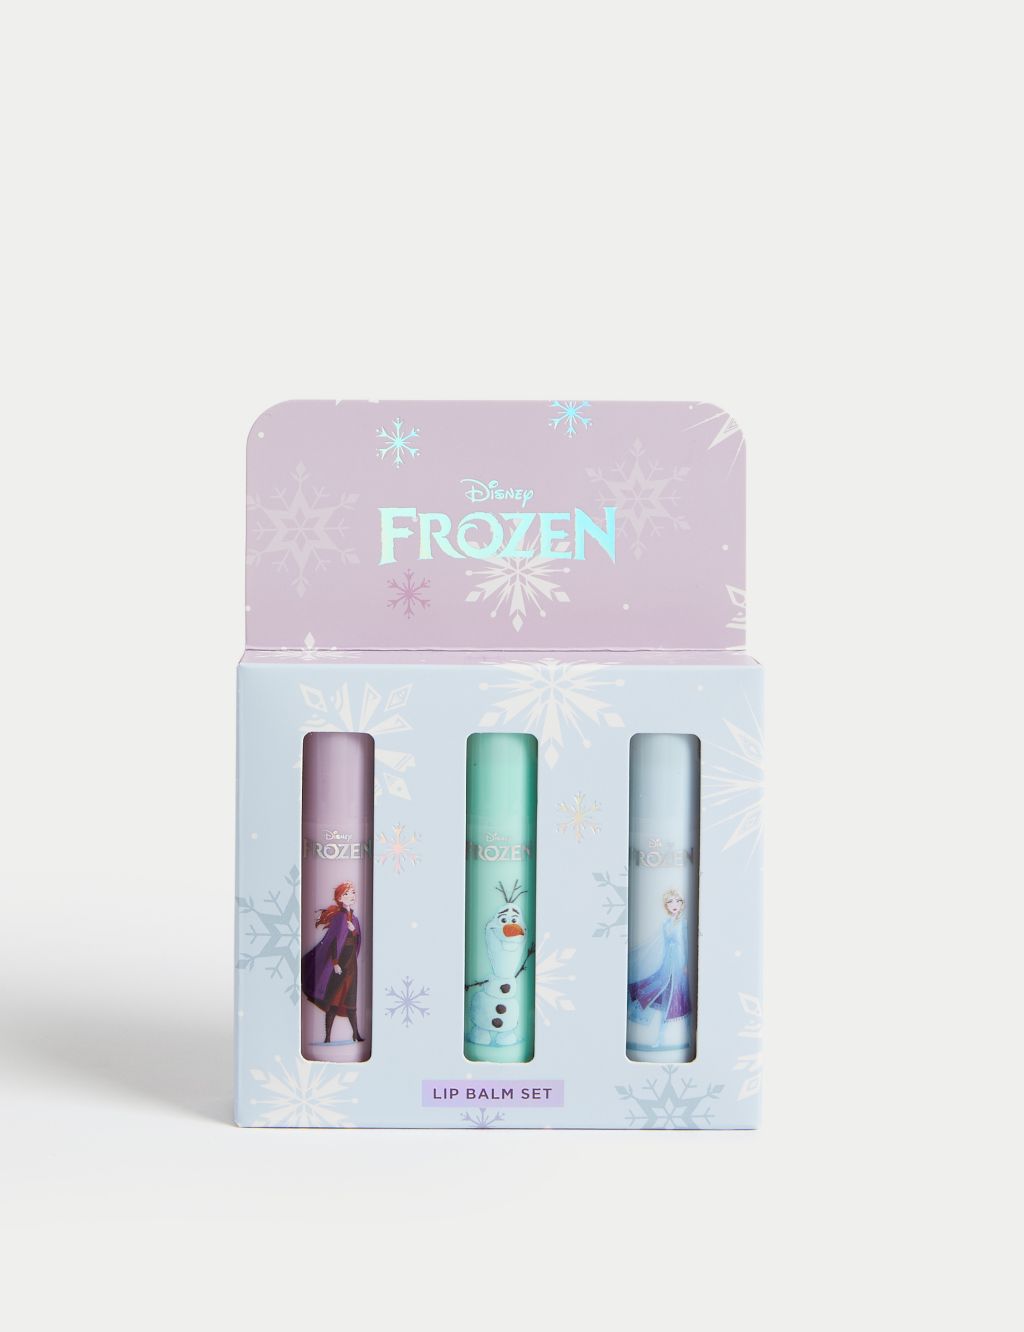 Disney Frozen™ Lip Balm Set image 1